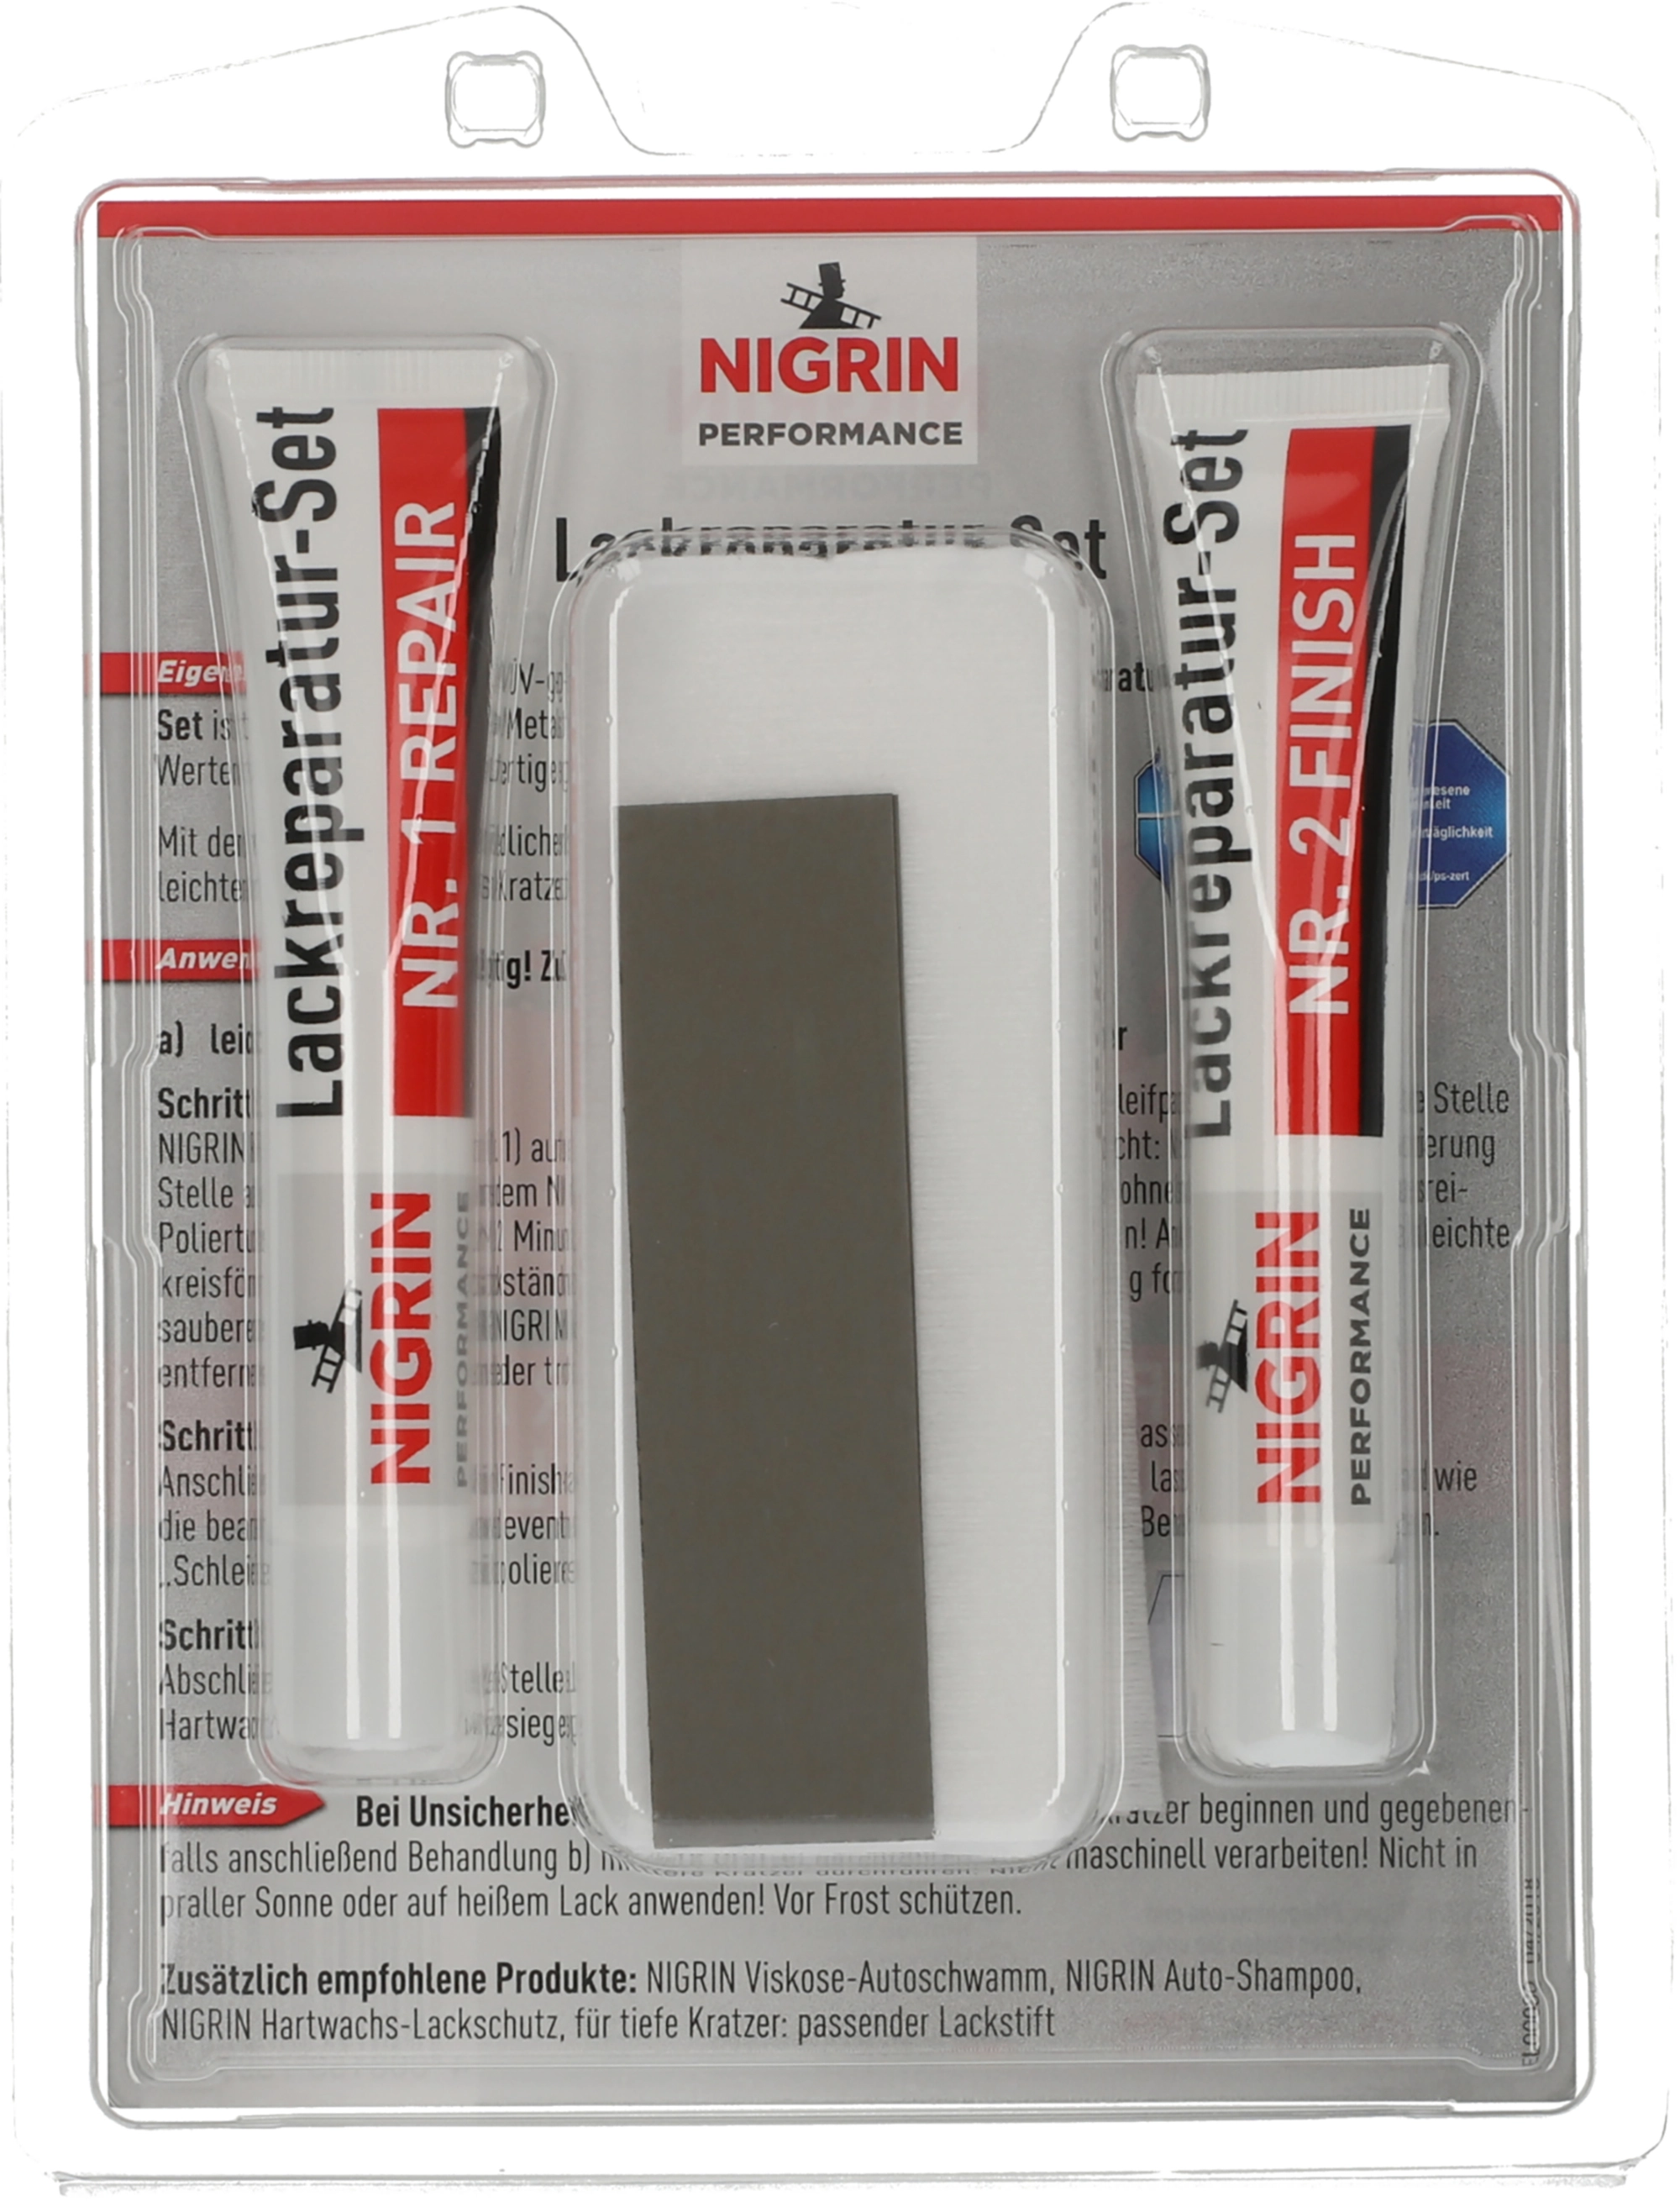 Nigrin Lack-Reparatur-Set